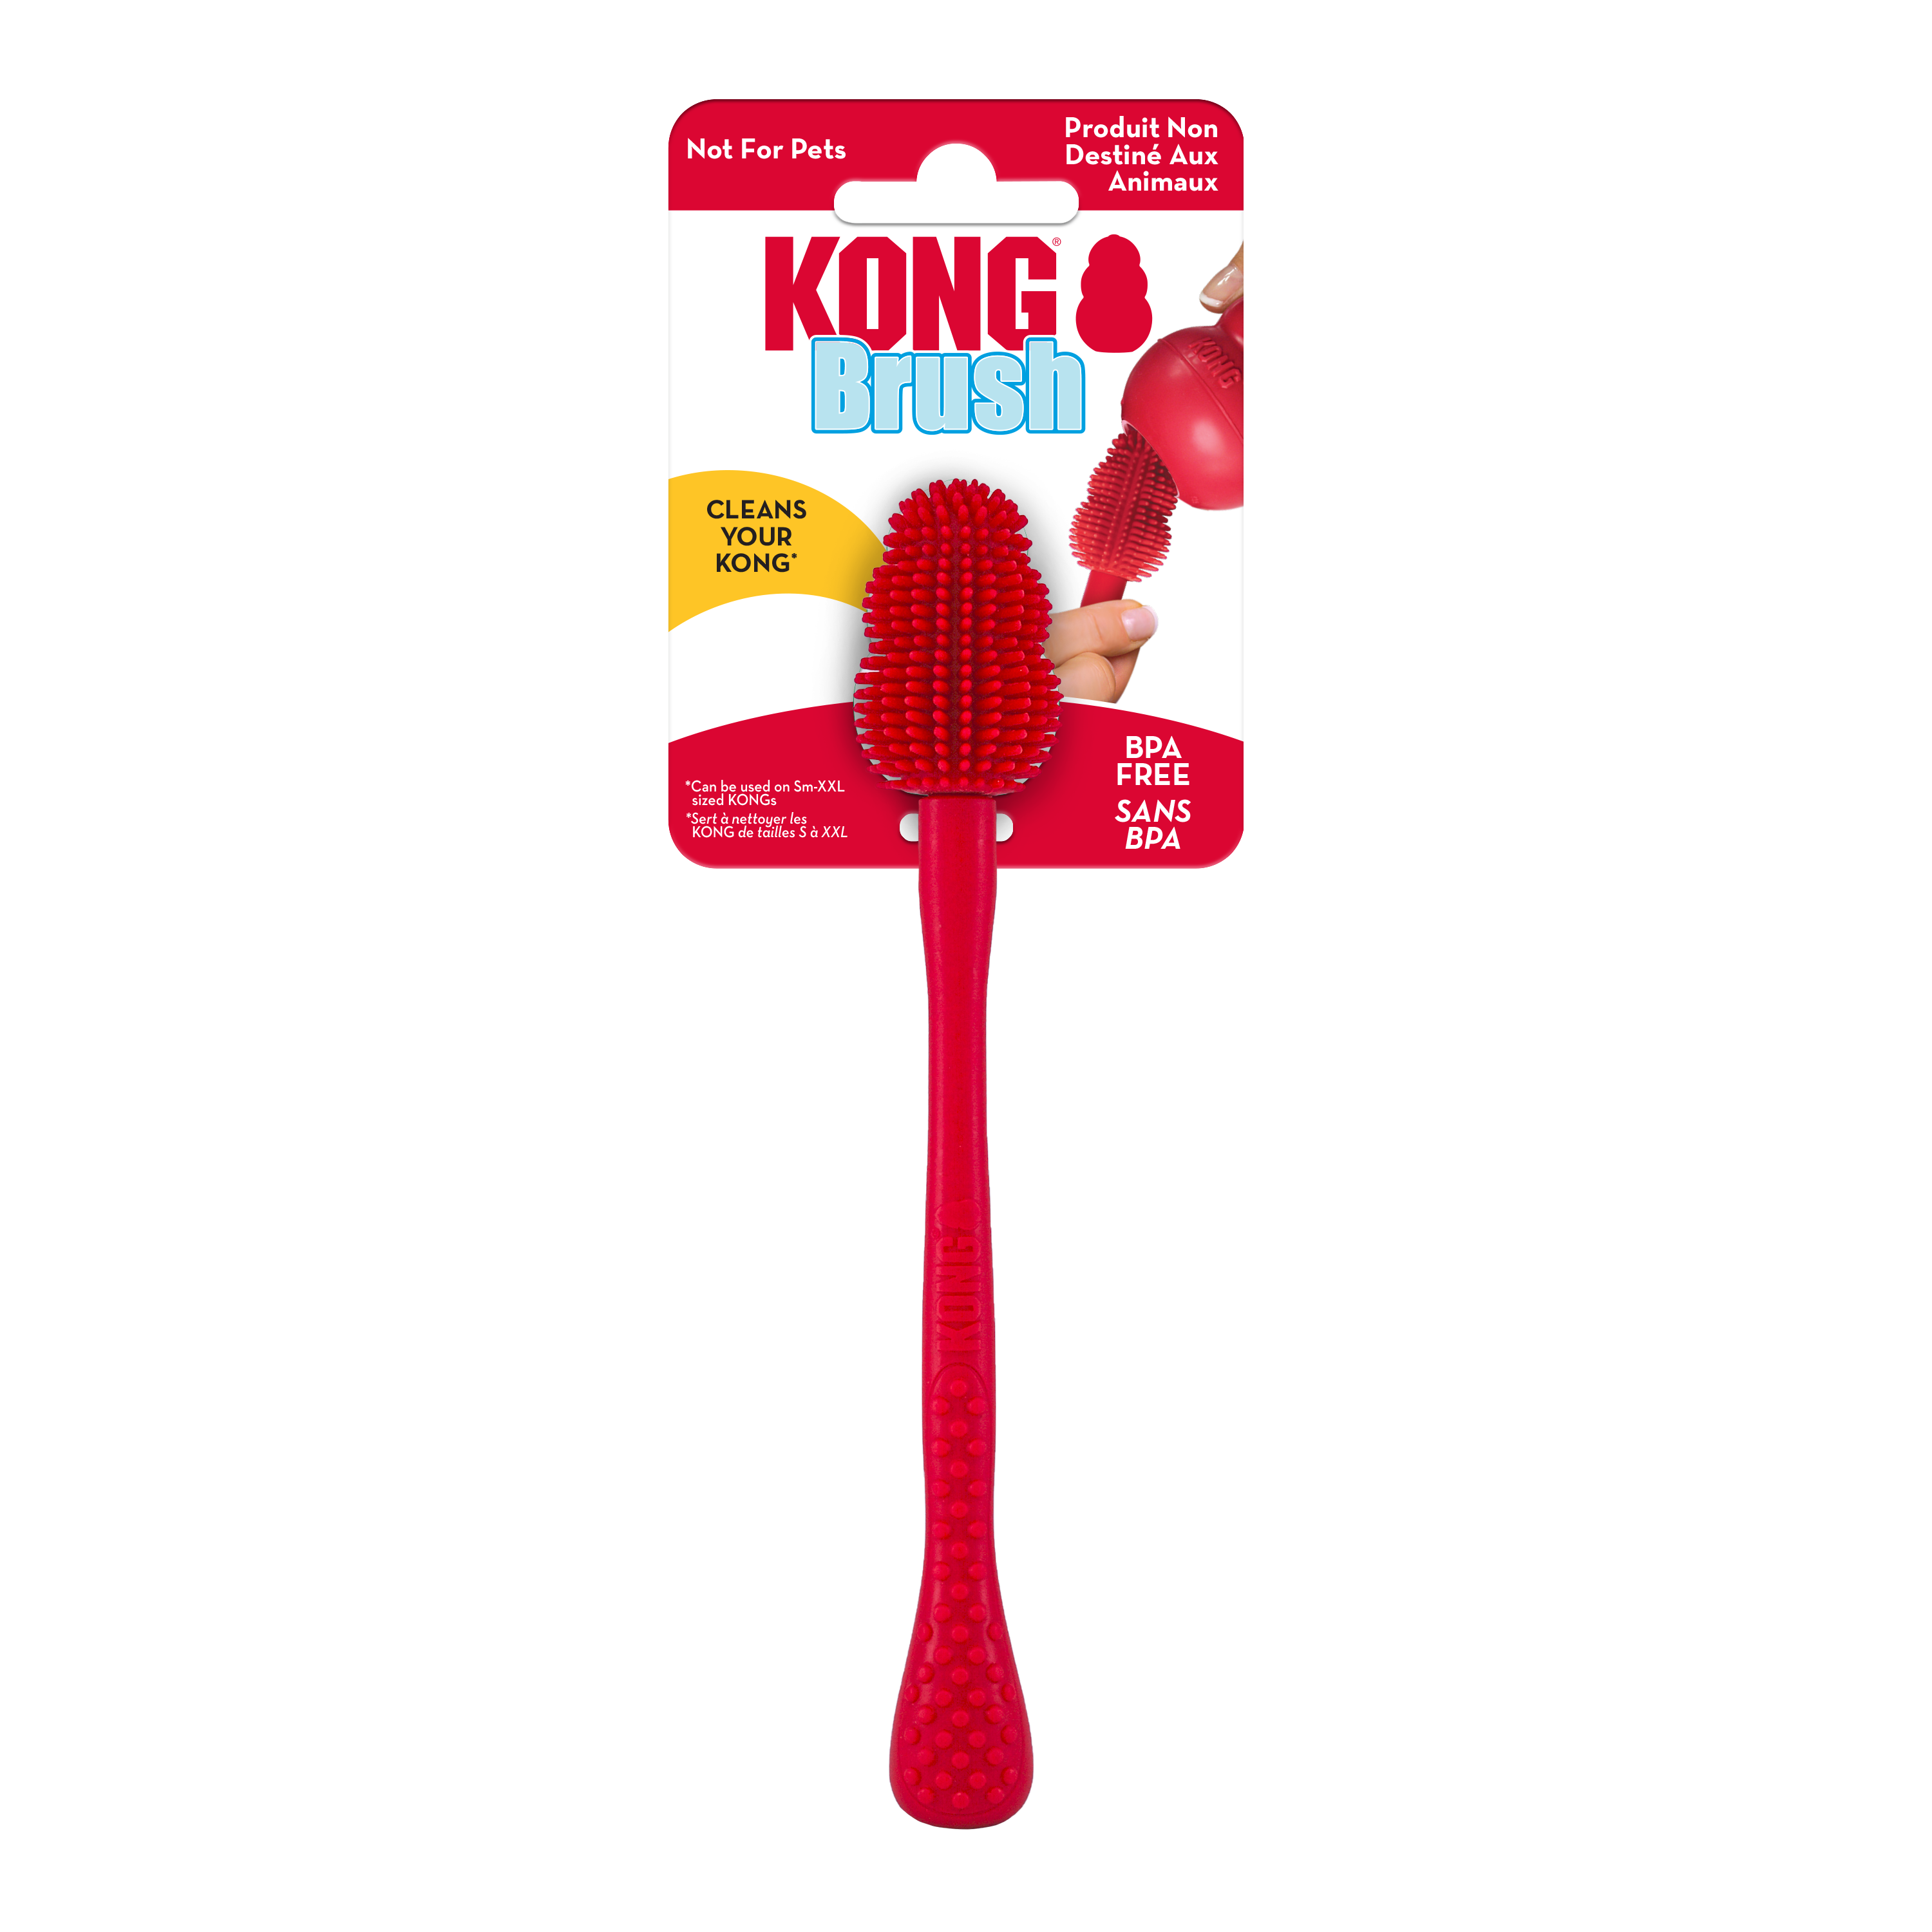 Imagem do produto da escova de limpeza KONG na embalagem